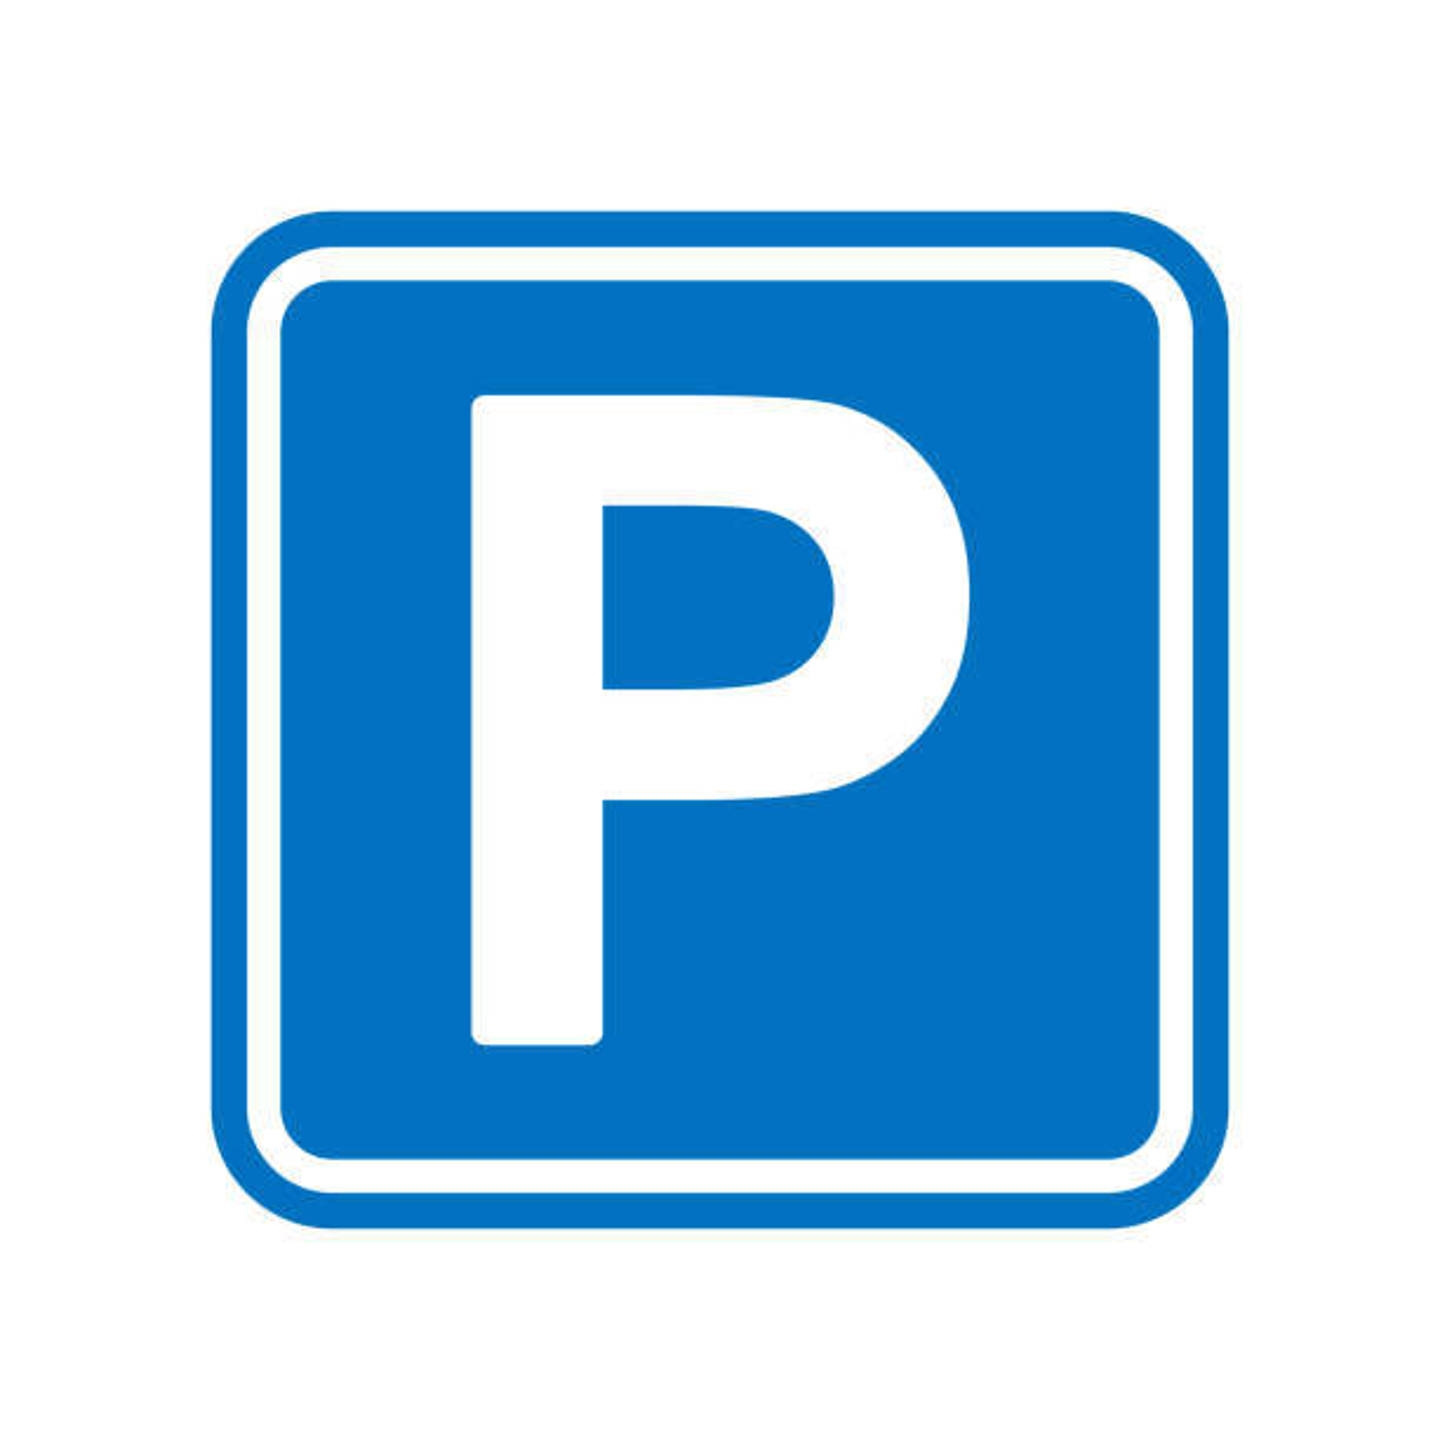 Parking te  koop in Neder-Over-Heembeek 1120 82400.00€  slaapkamers 12.50m² - Zoekertje 1324759